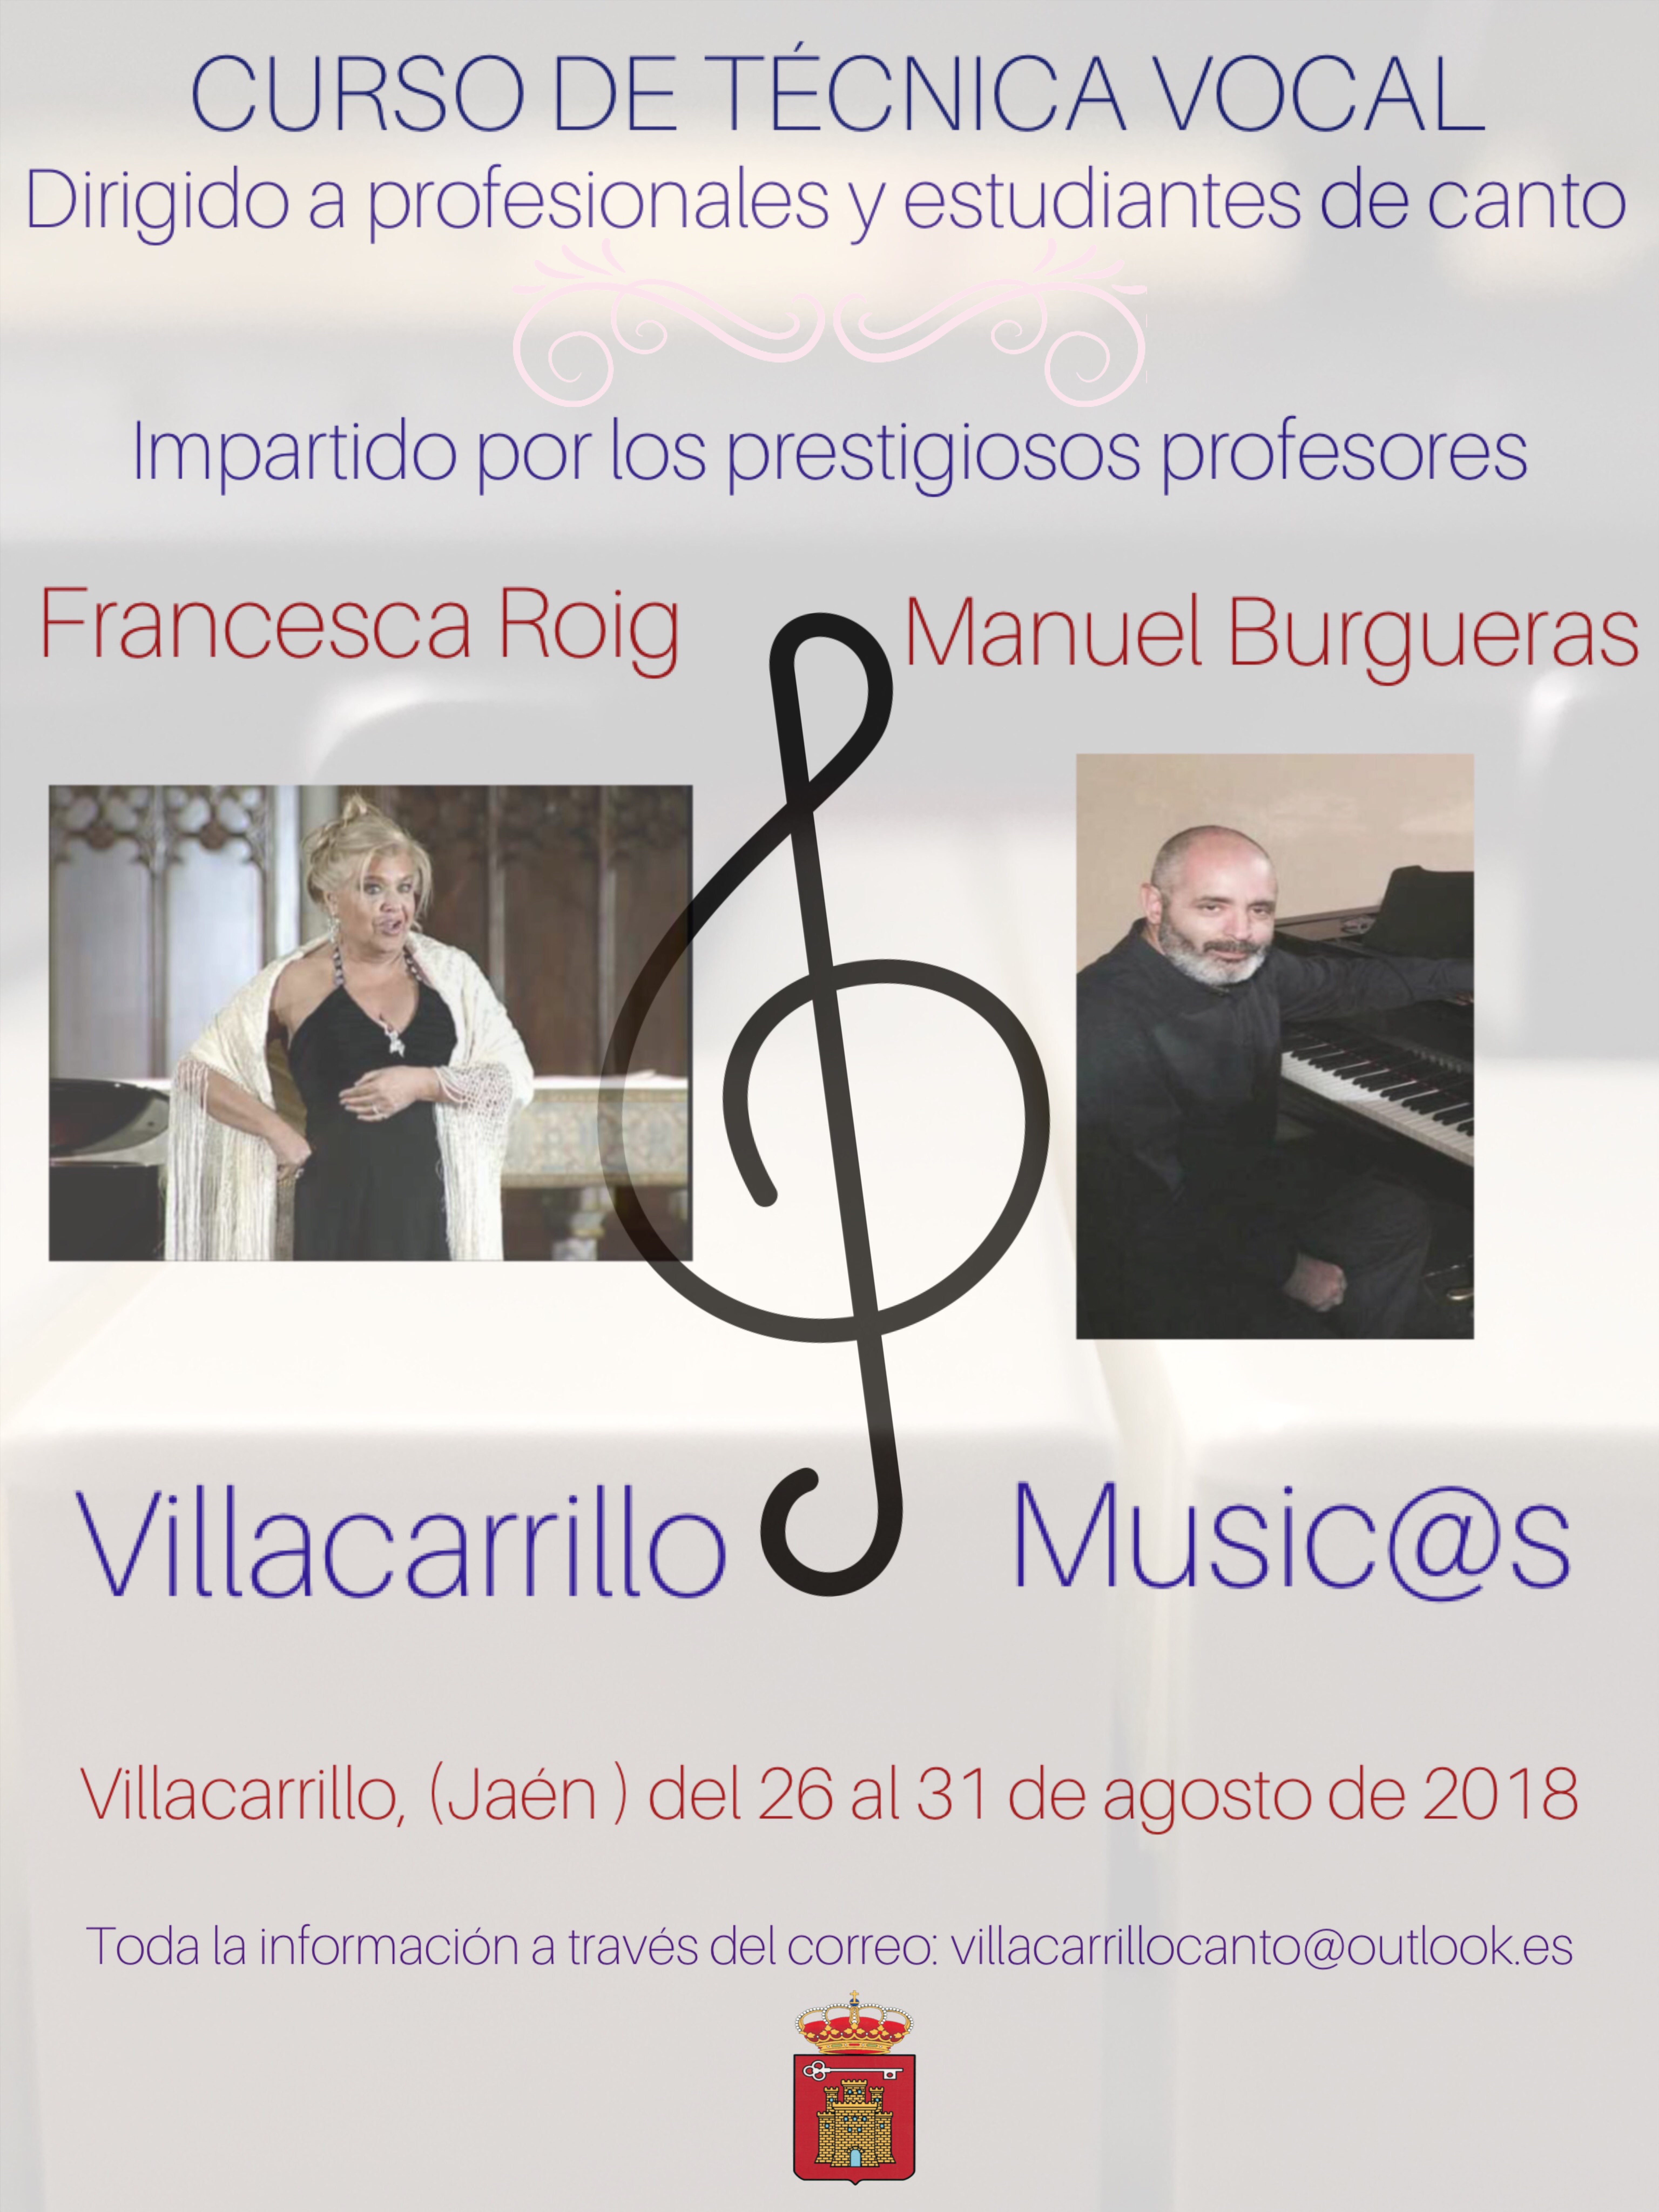 Villacarrillo acogerá un nuevo curso de técnica vocal con Francesca Roig (mezzosoprano) y Manuel Burgueras (pianista)